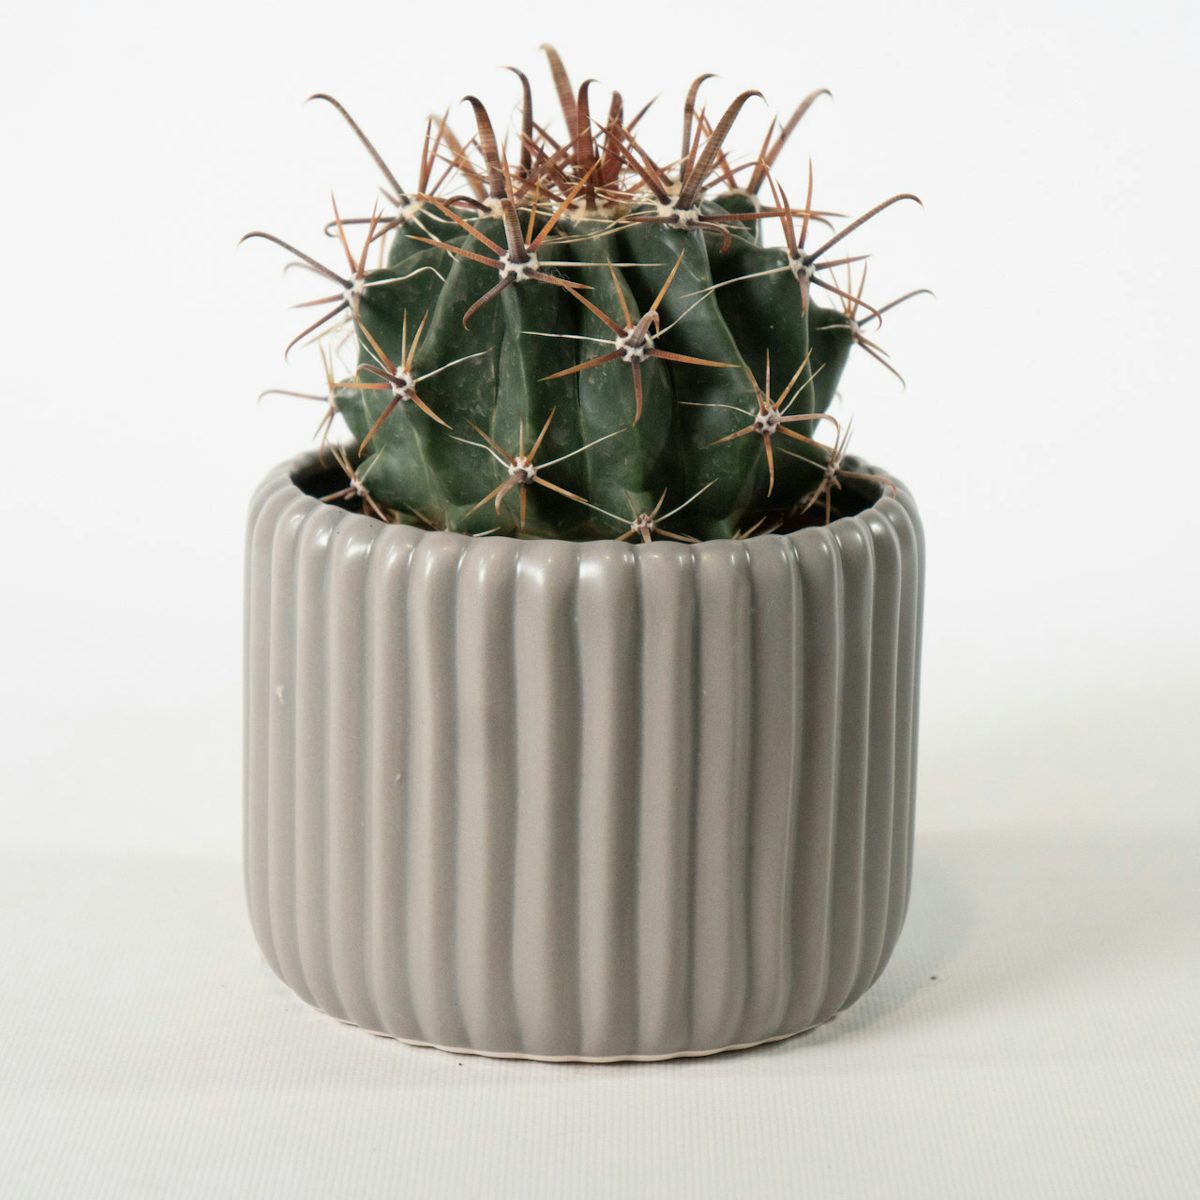 Cactus immortel avec cache-pot gris